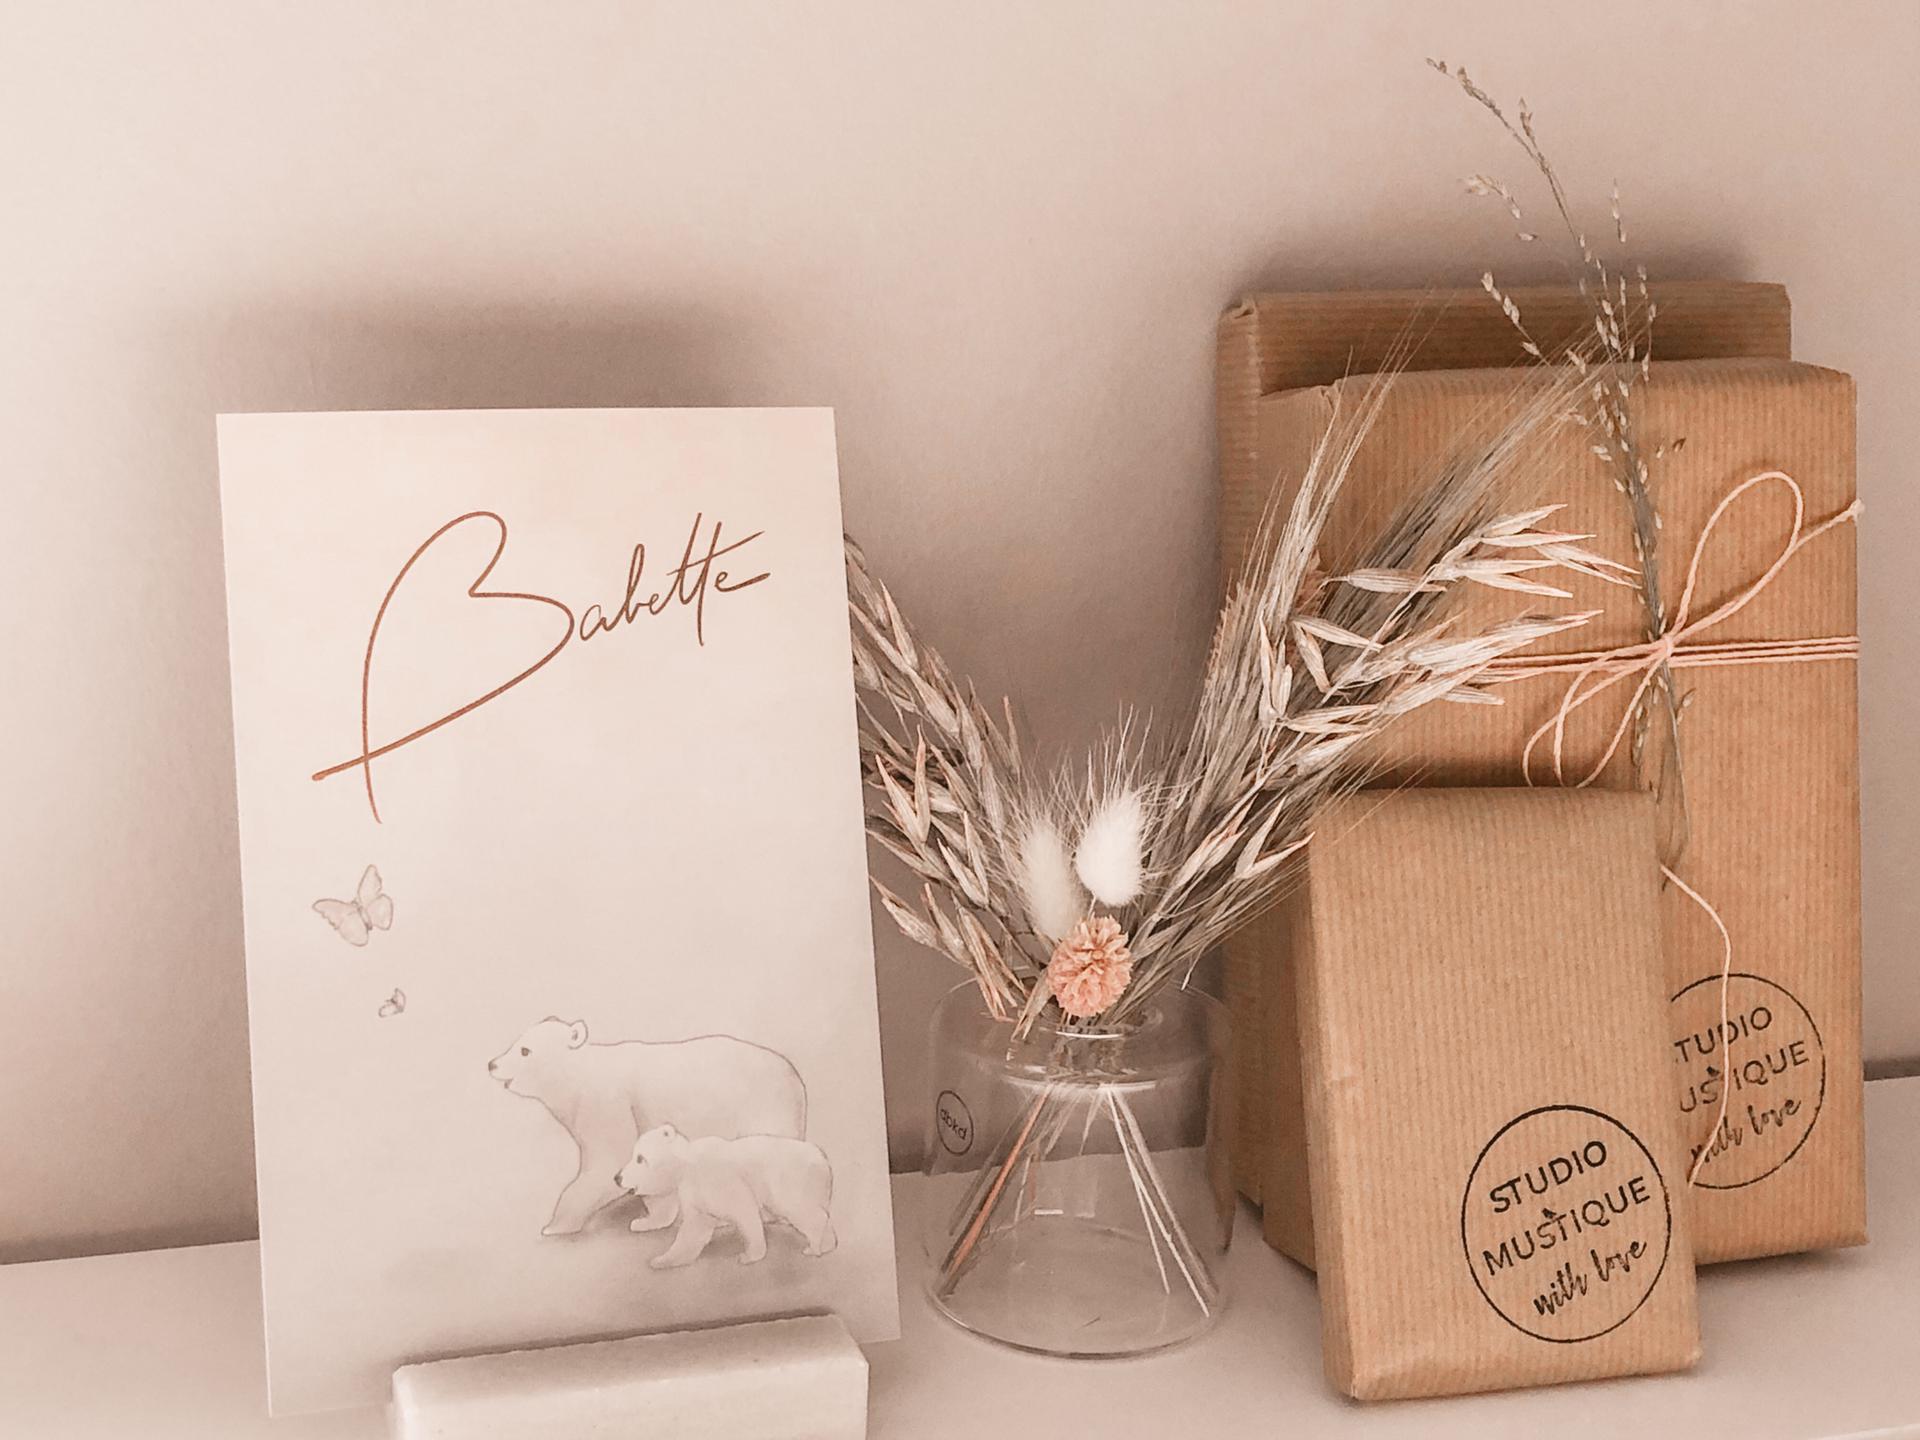 Babette geboortekaartje ijsberen, foliedruk rose goud, letterpress, studio blanche, studio mustique